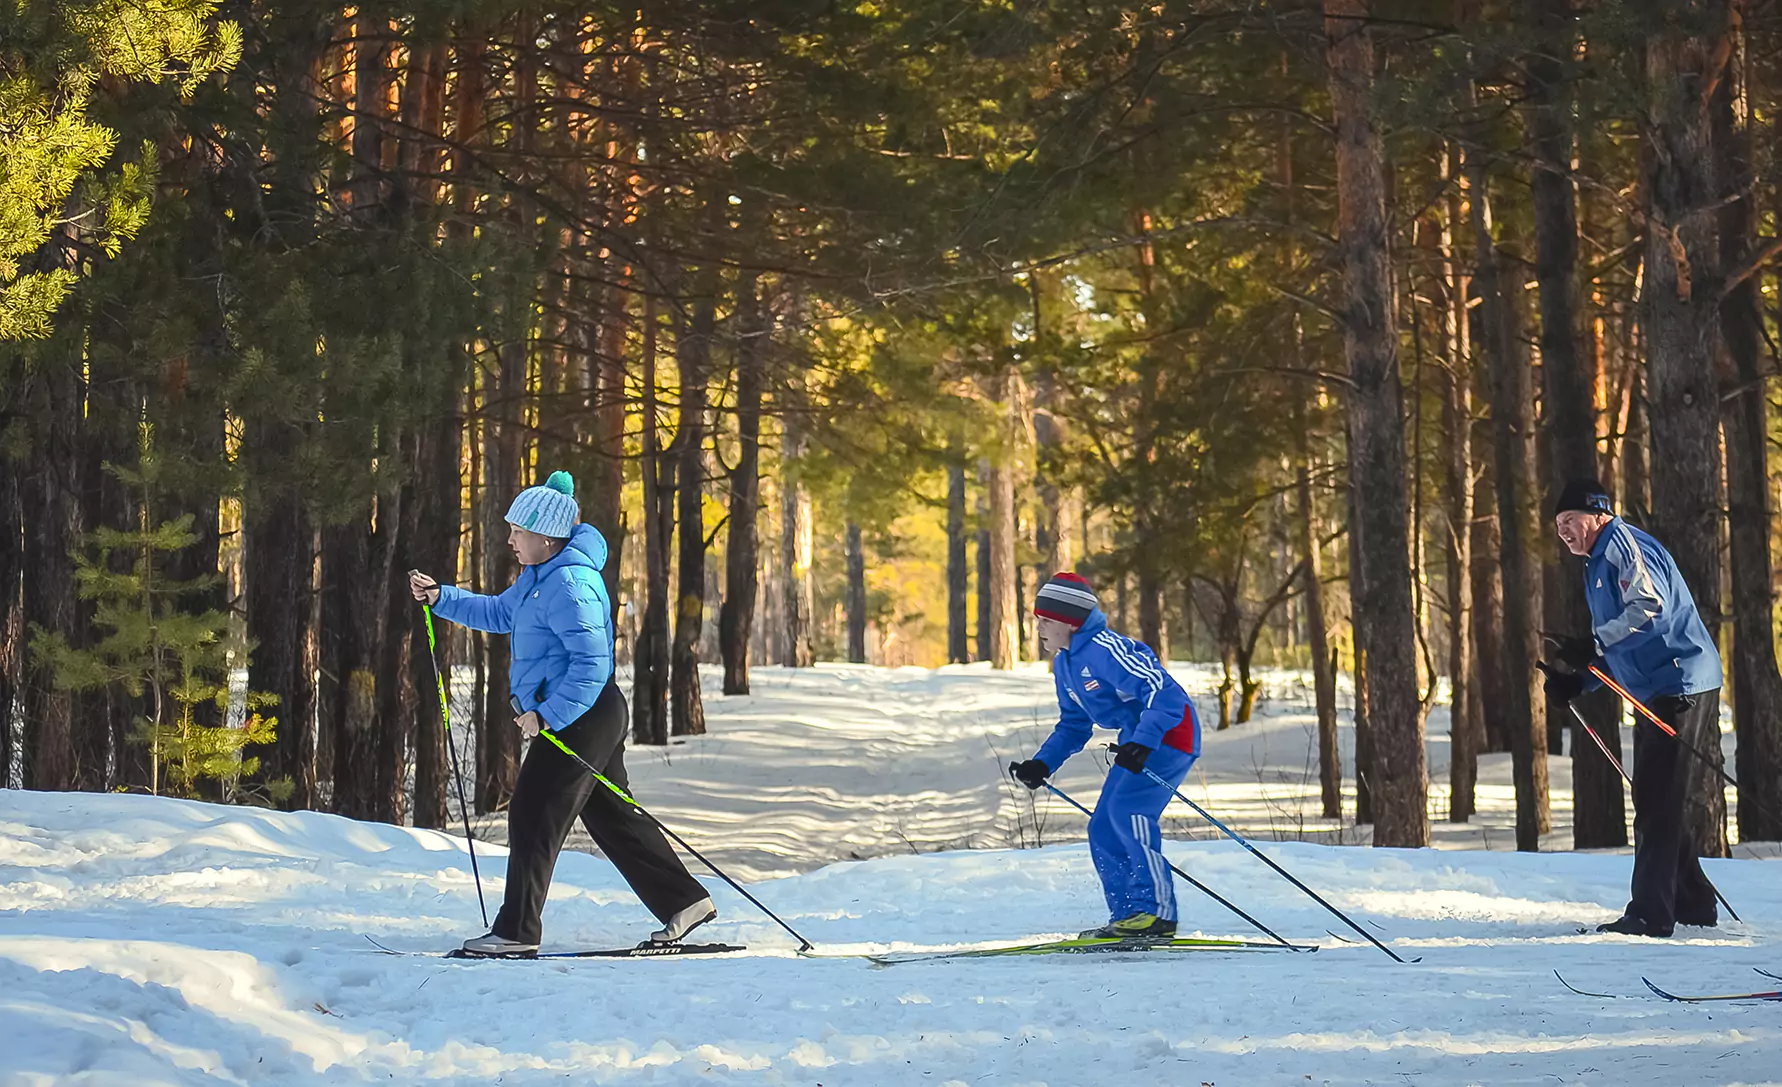 4 лыжная трасса. Лыжи Таллин. Лыжные прогулки по лесу. Лыжник в лесу. Катание на лыжах в лесу.